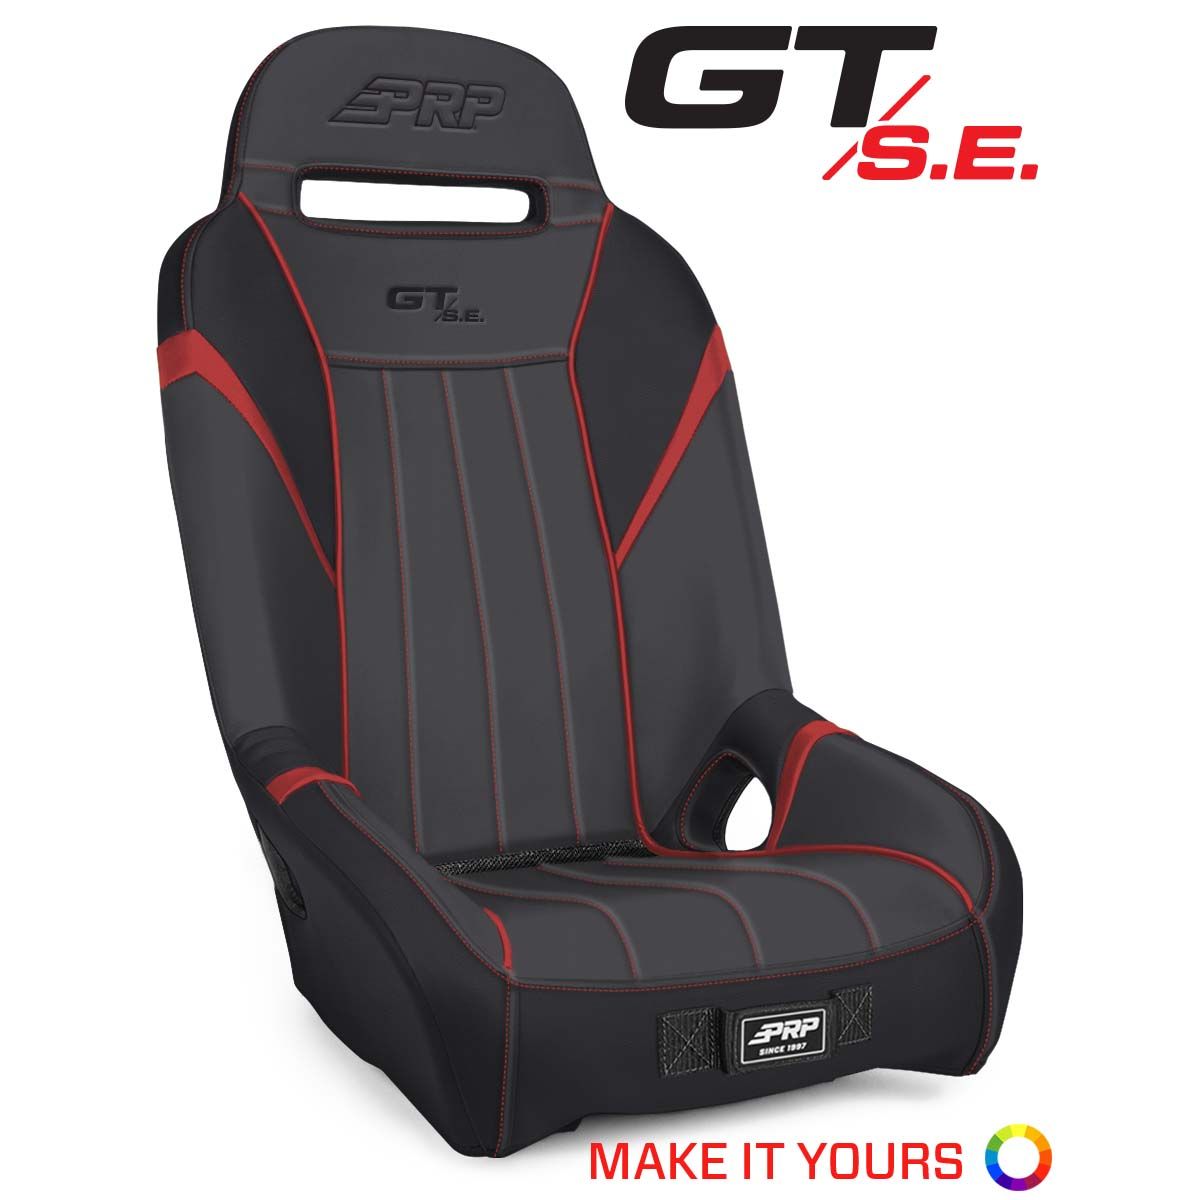 PRP CF Moto Z Force 500/600/800/1000 GT/S.E. Suspension Seat